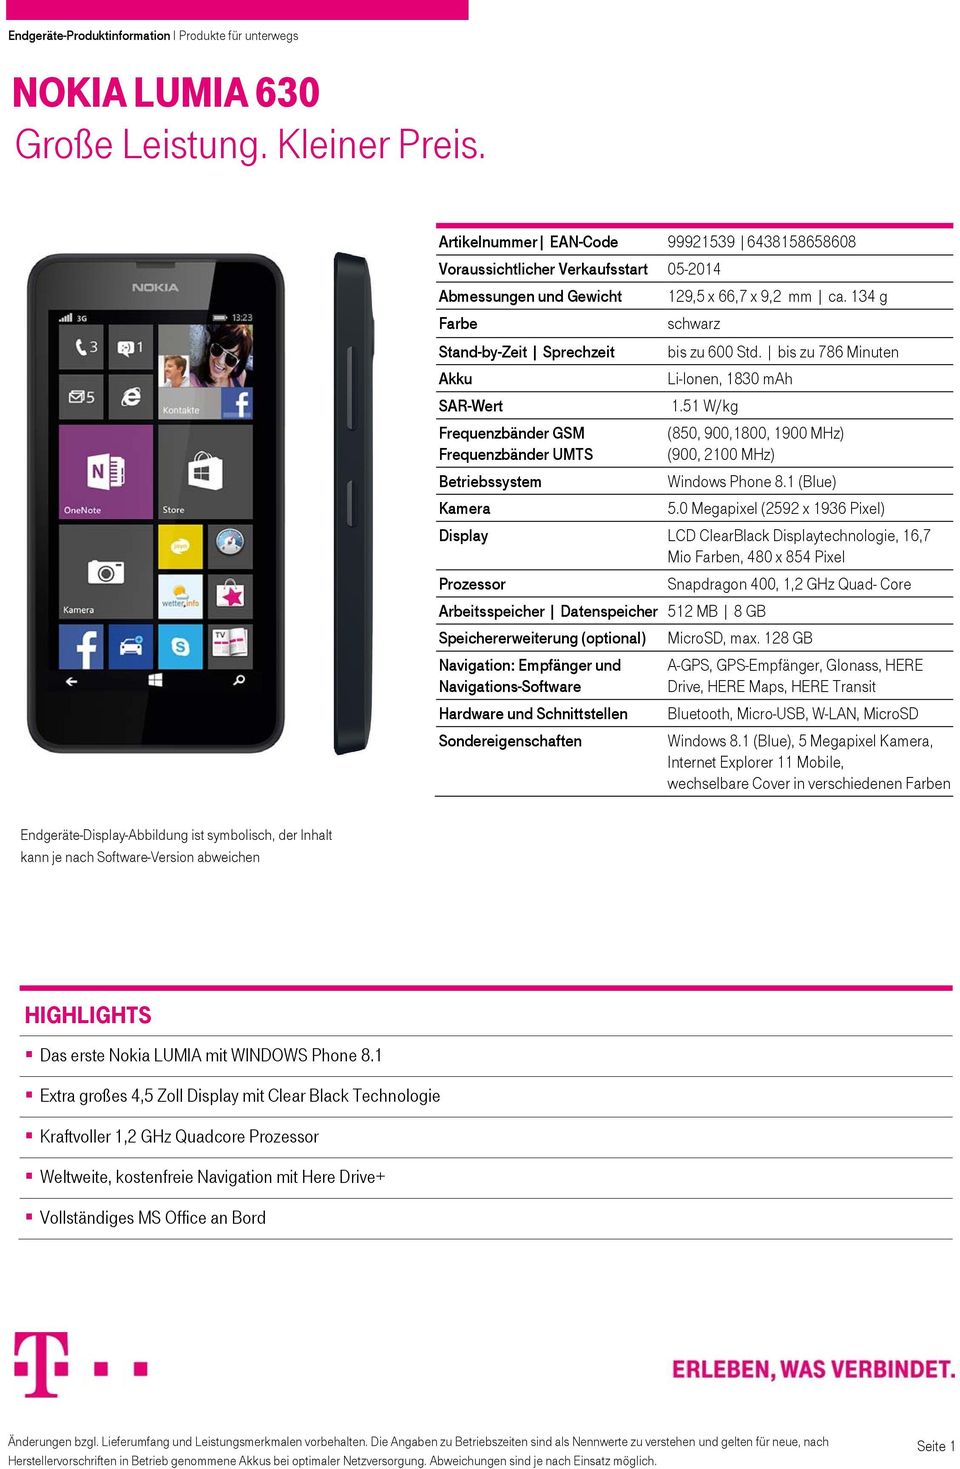 51 W/kg Frequenzbänder GSM Frequenzbänder UMTS Betriebssystem Kamera (850, 900,1800, 1900 MHz) (900, 2100 MHz) Windows Phone 8.1 (Blue) 5.